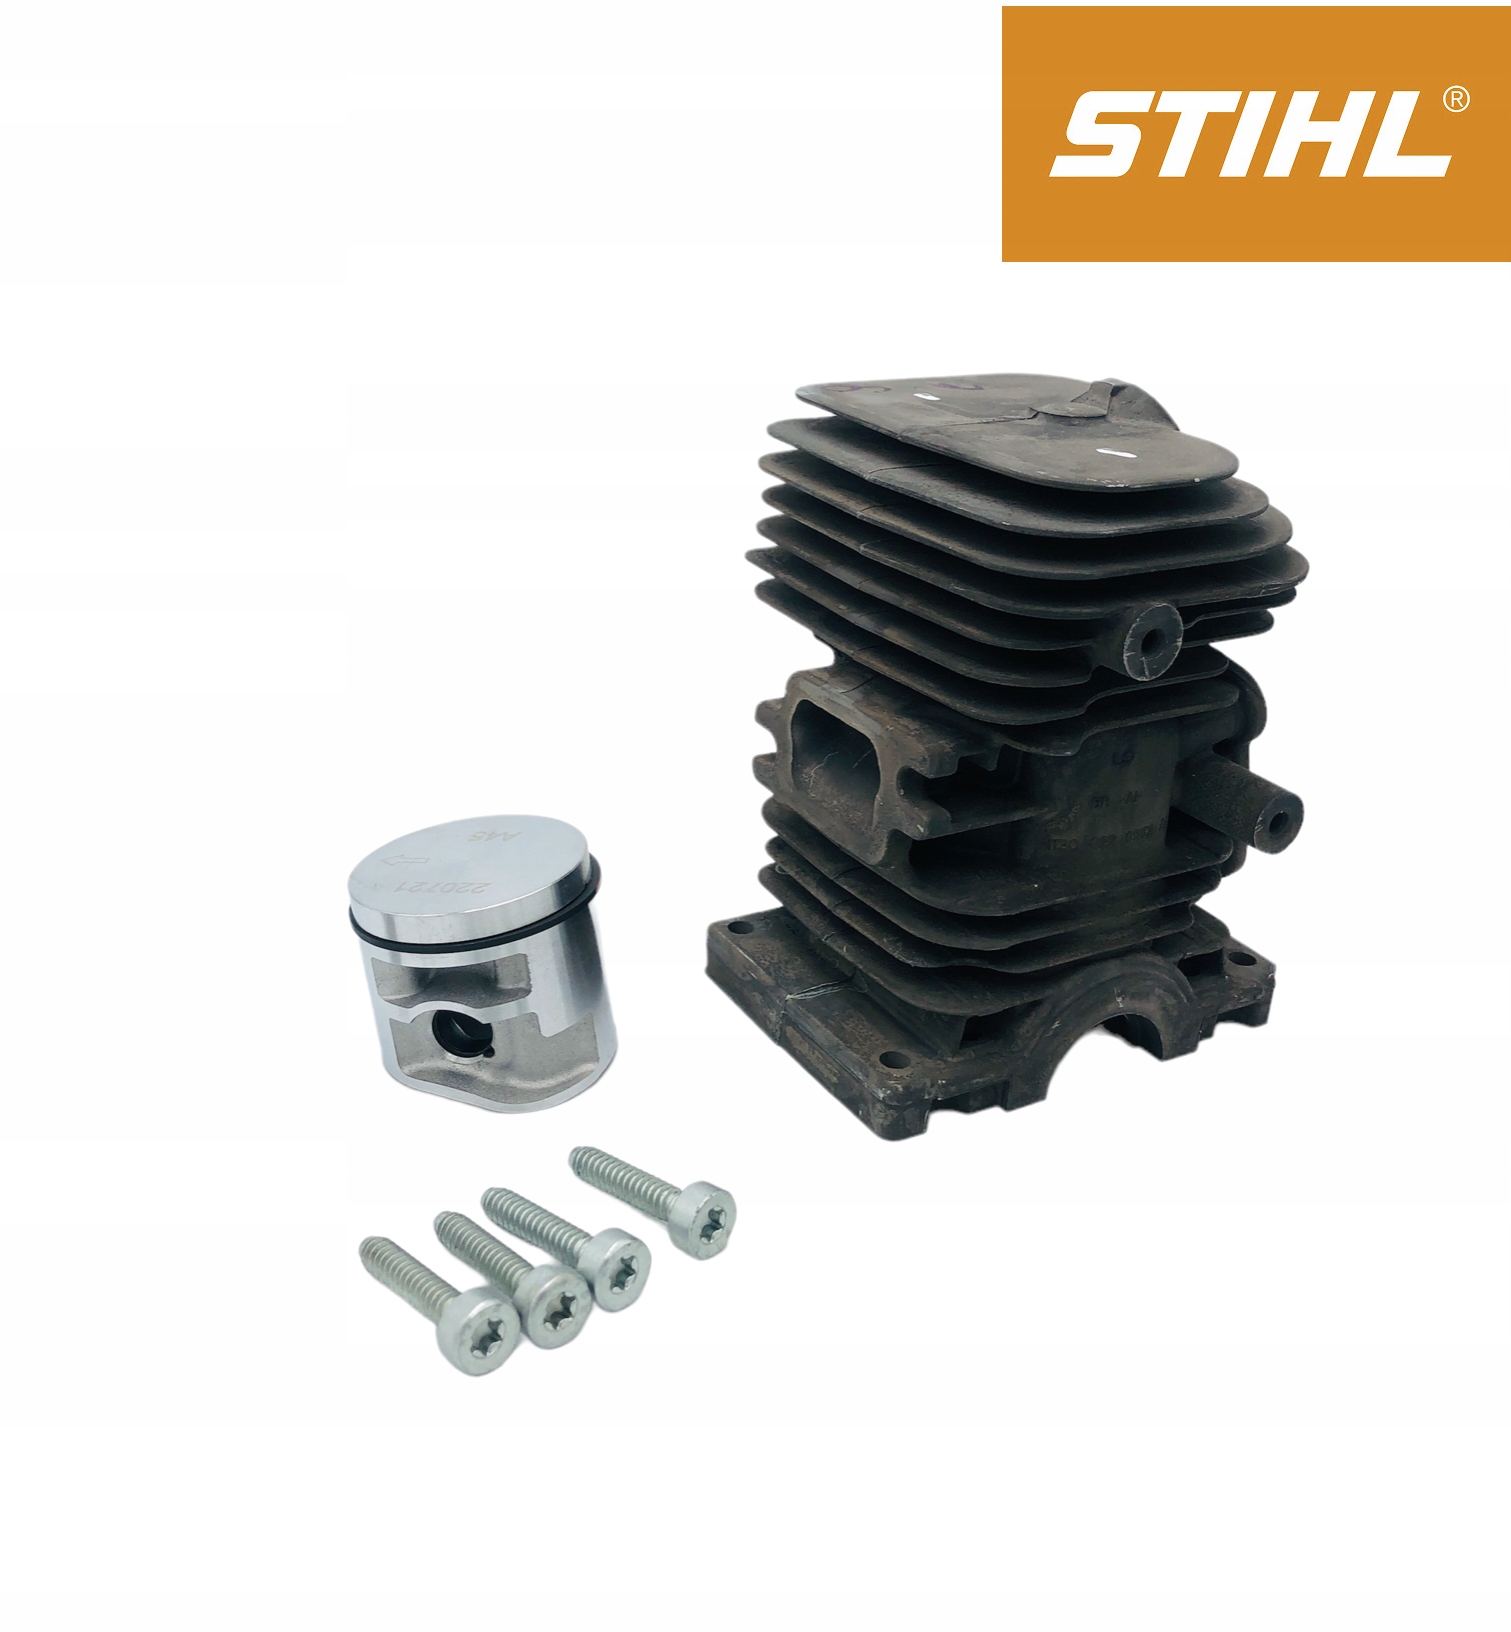 Stihl Motorsäge MS 180 (2-MIX) 